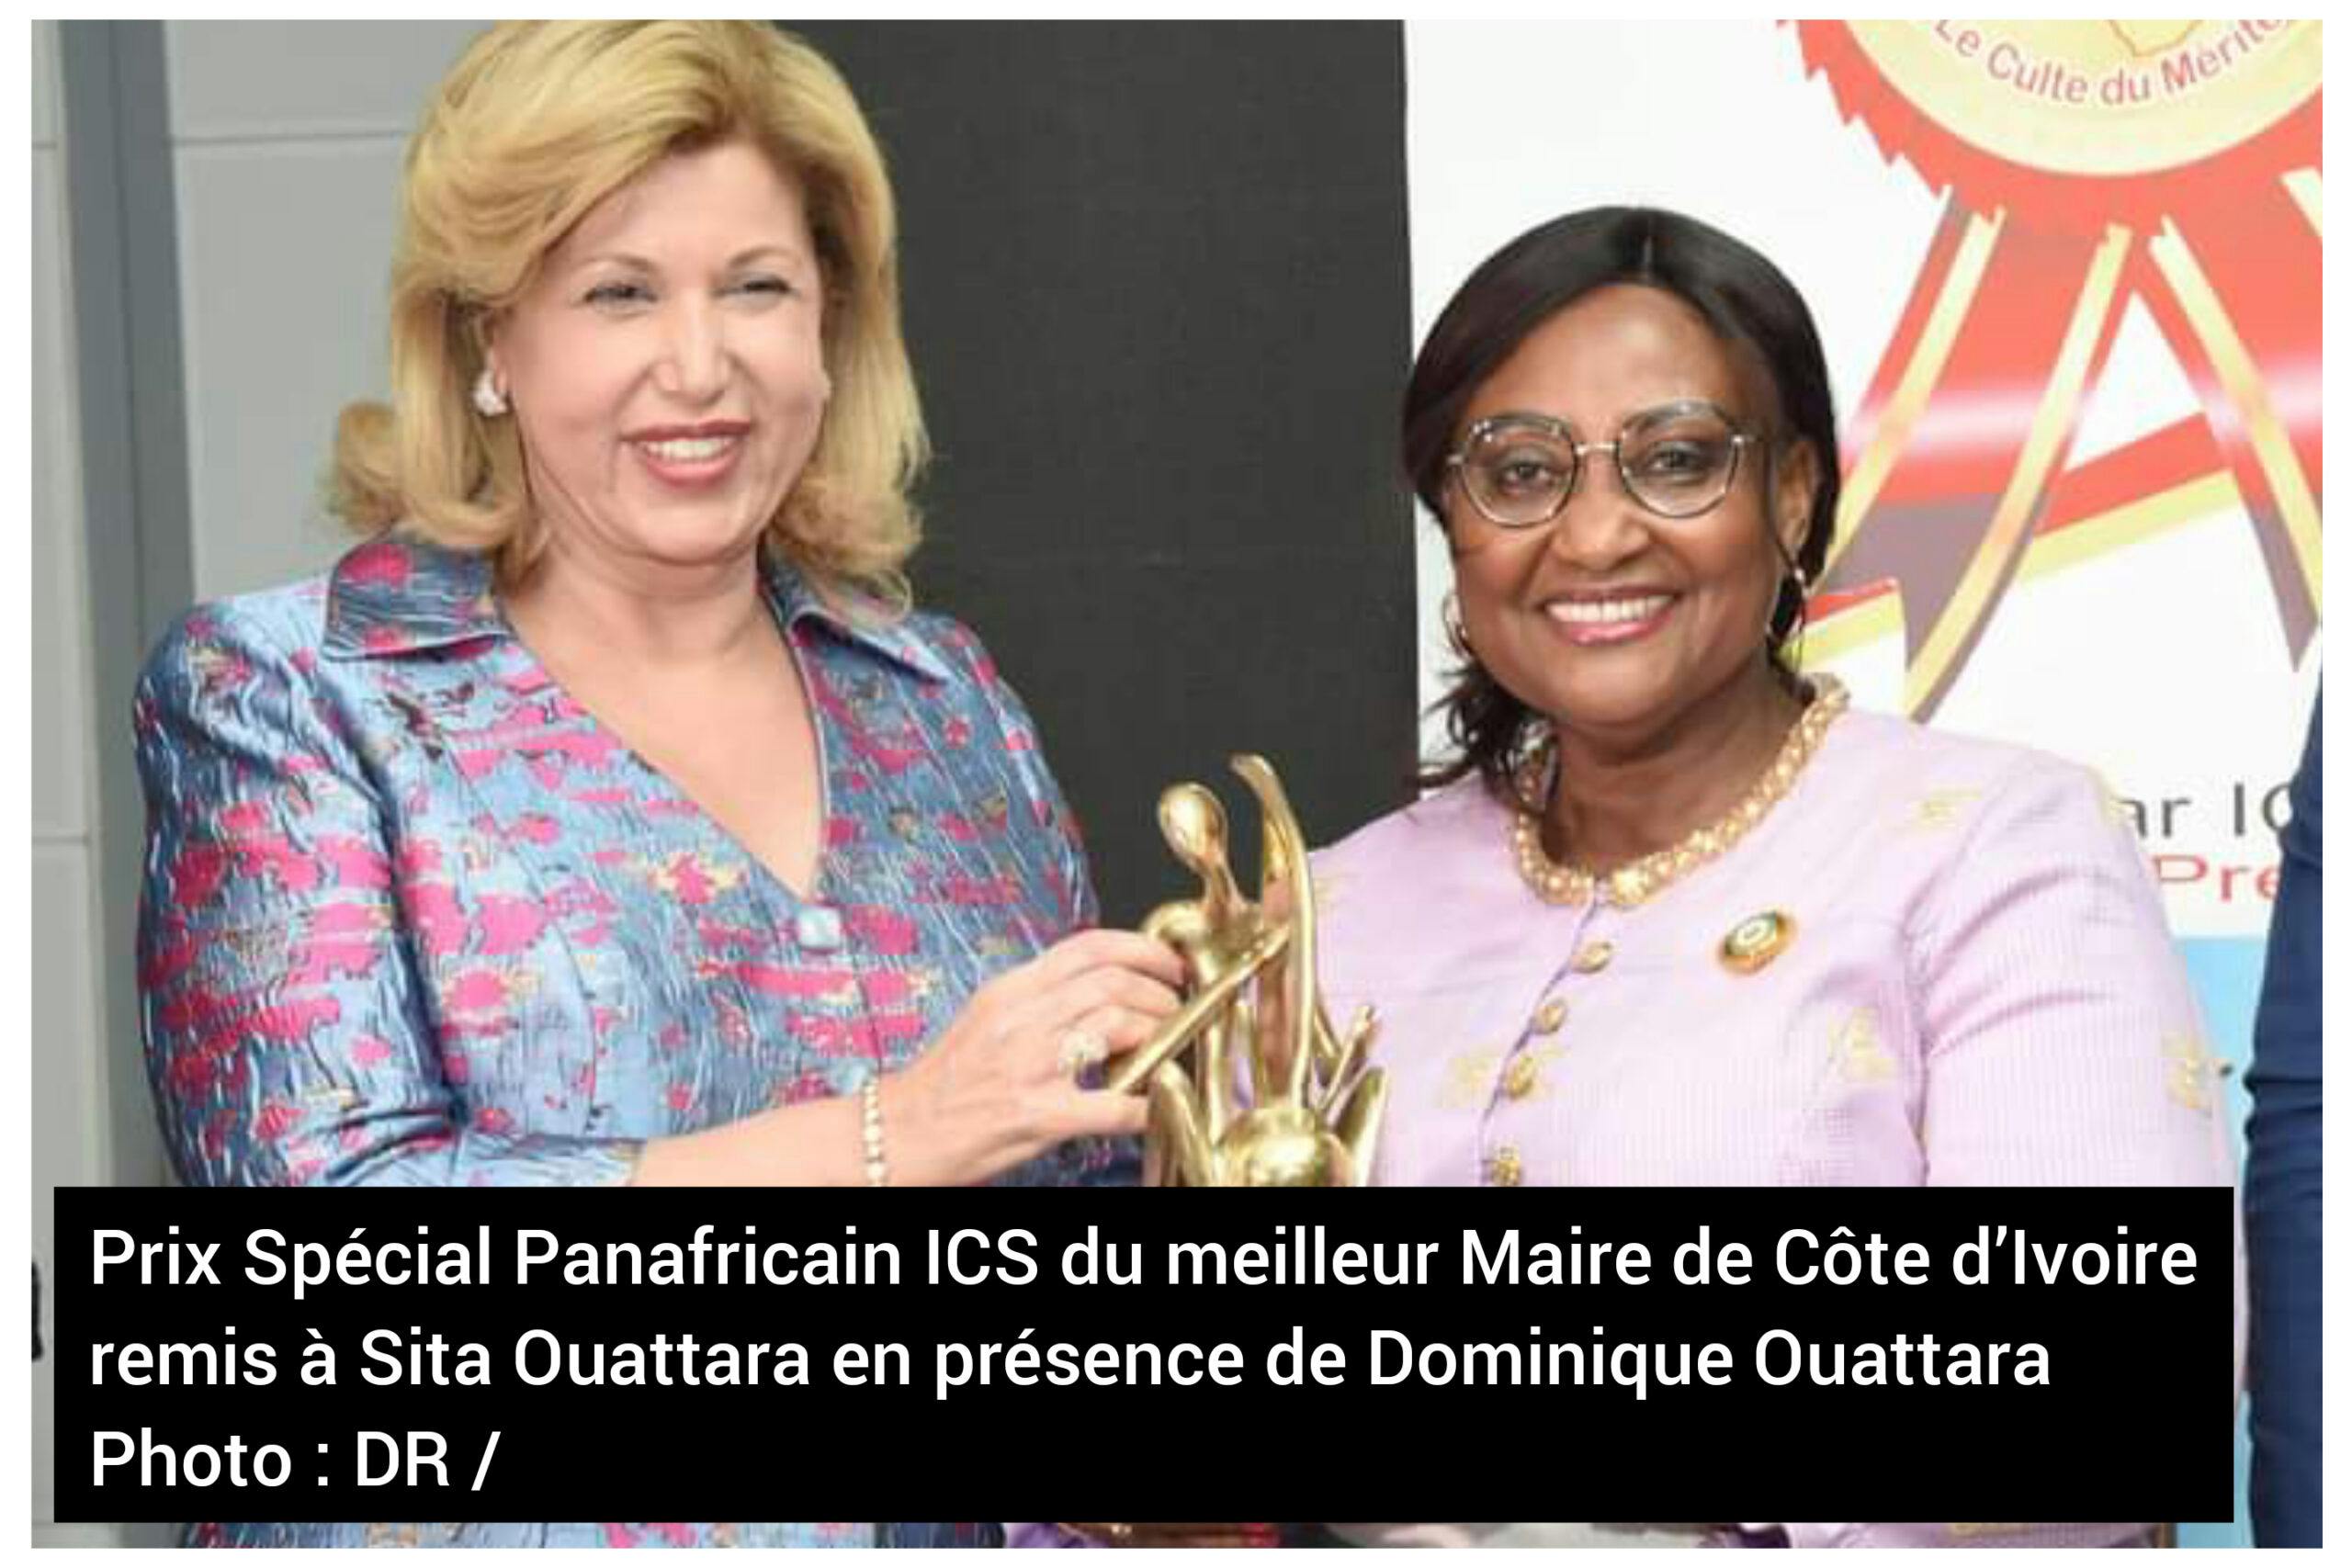 Distinction : Sita Ouattara, Prix Spécial Panafricain ICS 2021-2022 du meilleur Maire de Côte d’ivoire